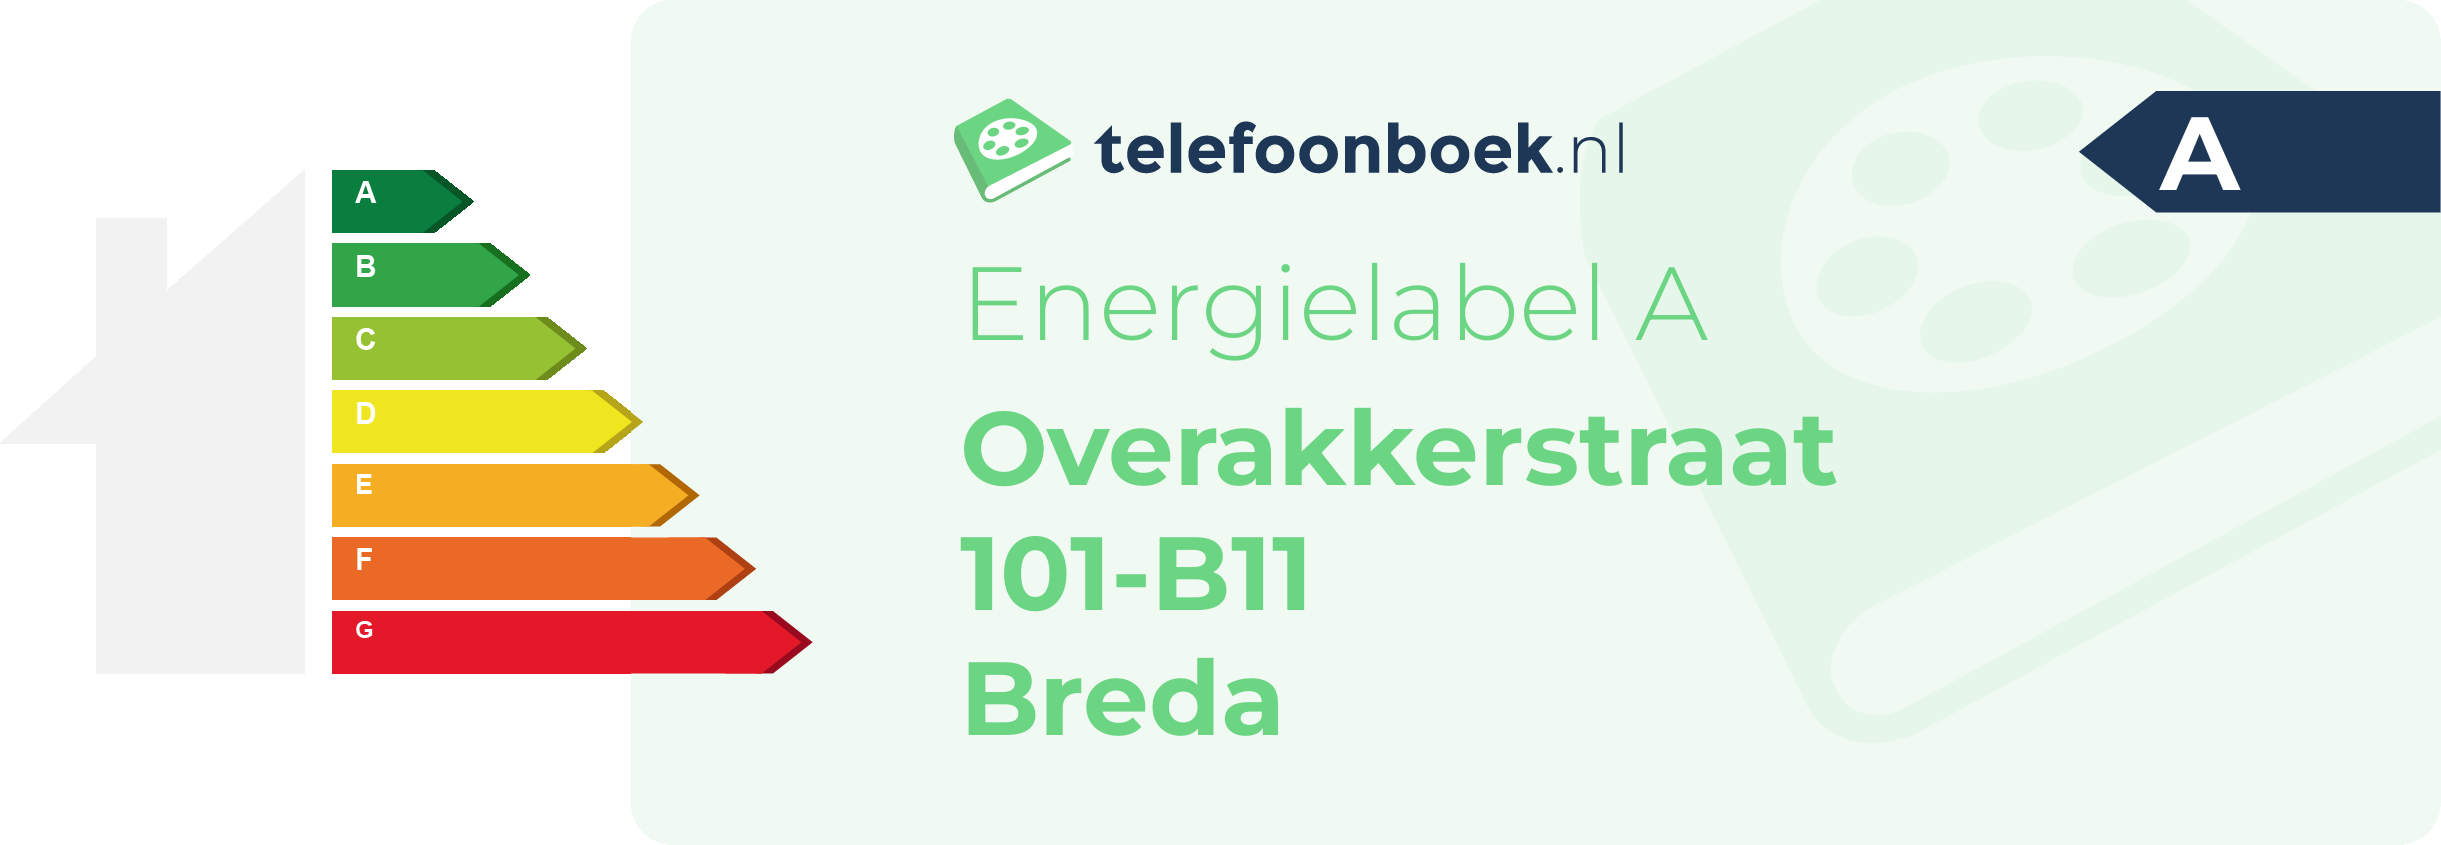 Energielabel Overakkerstraat 101-B11 Breda